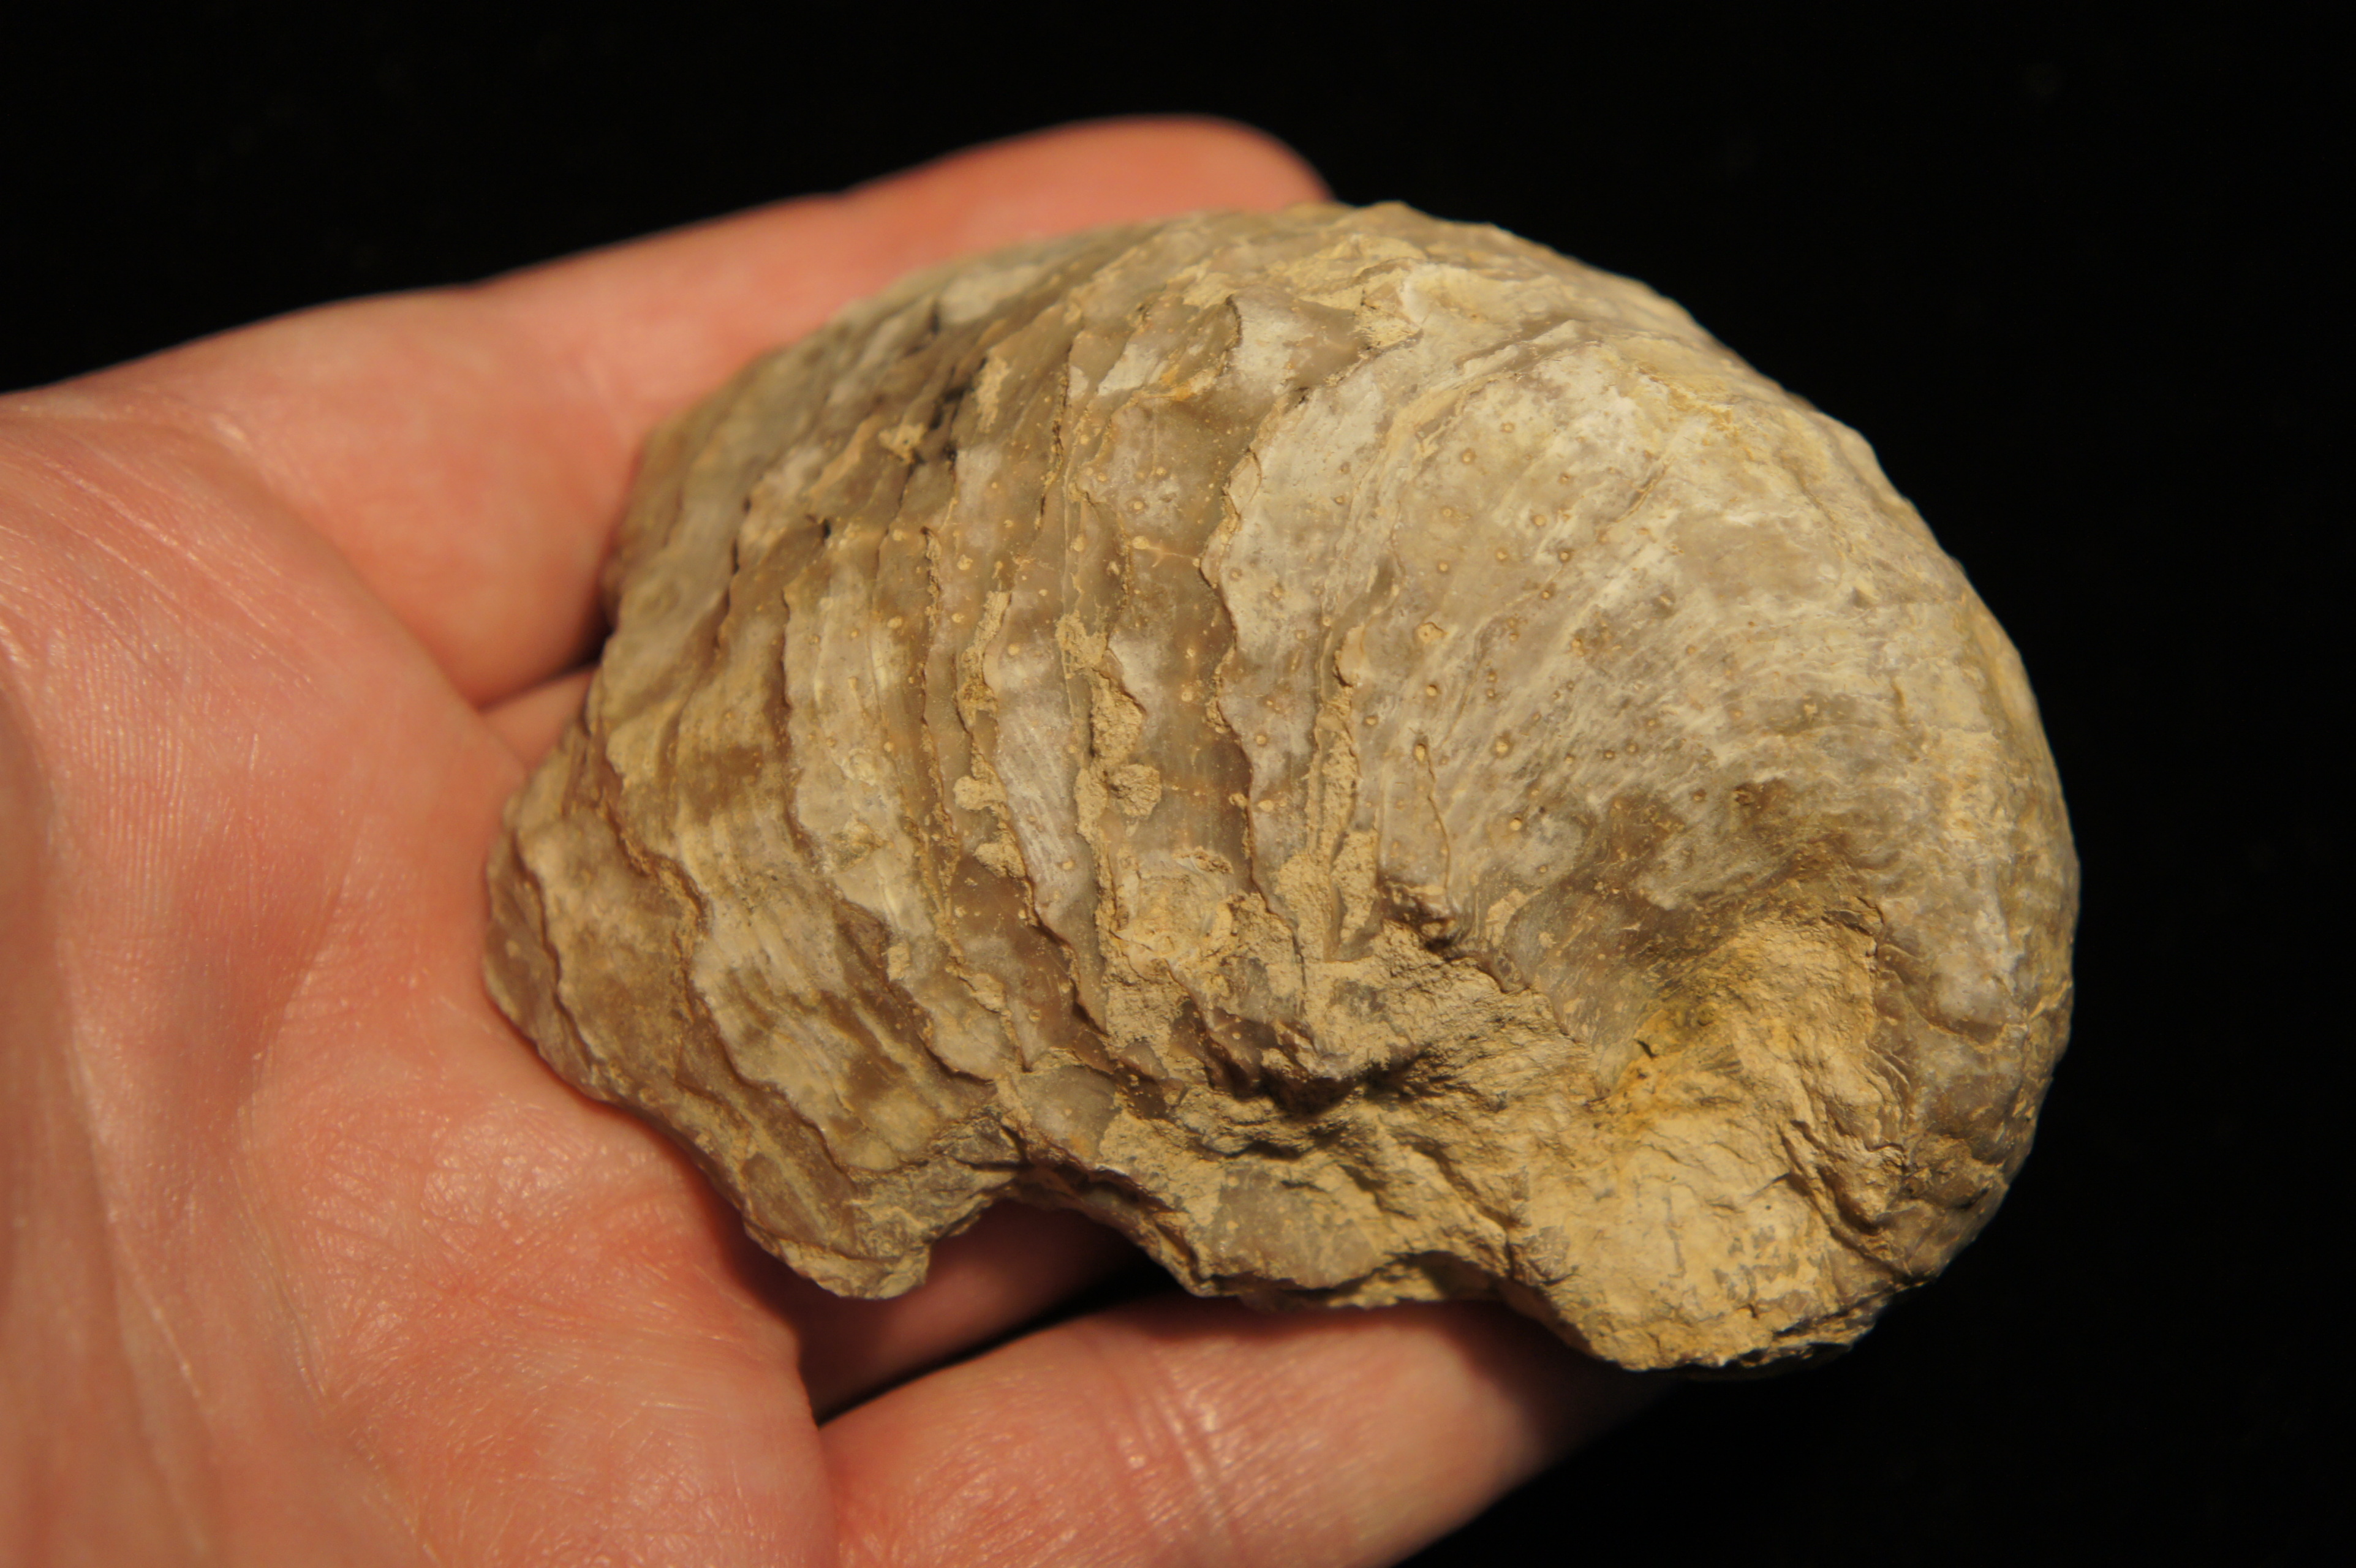 comparación de mano con este fossil